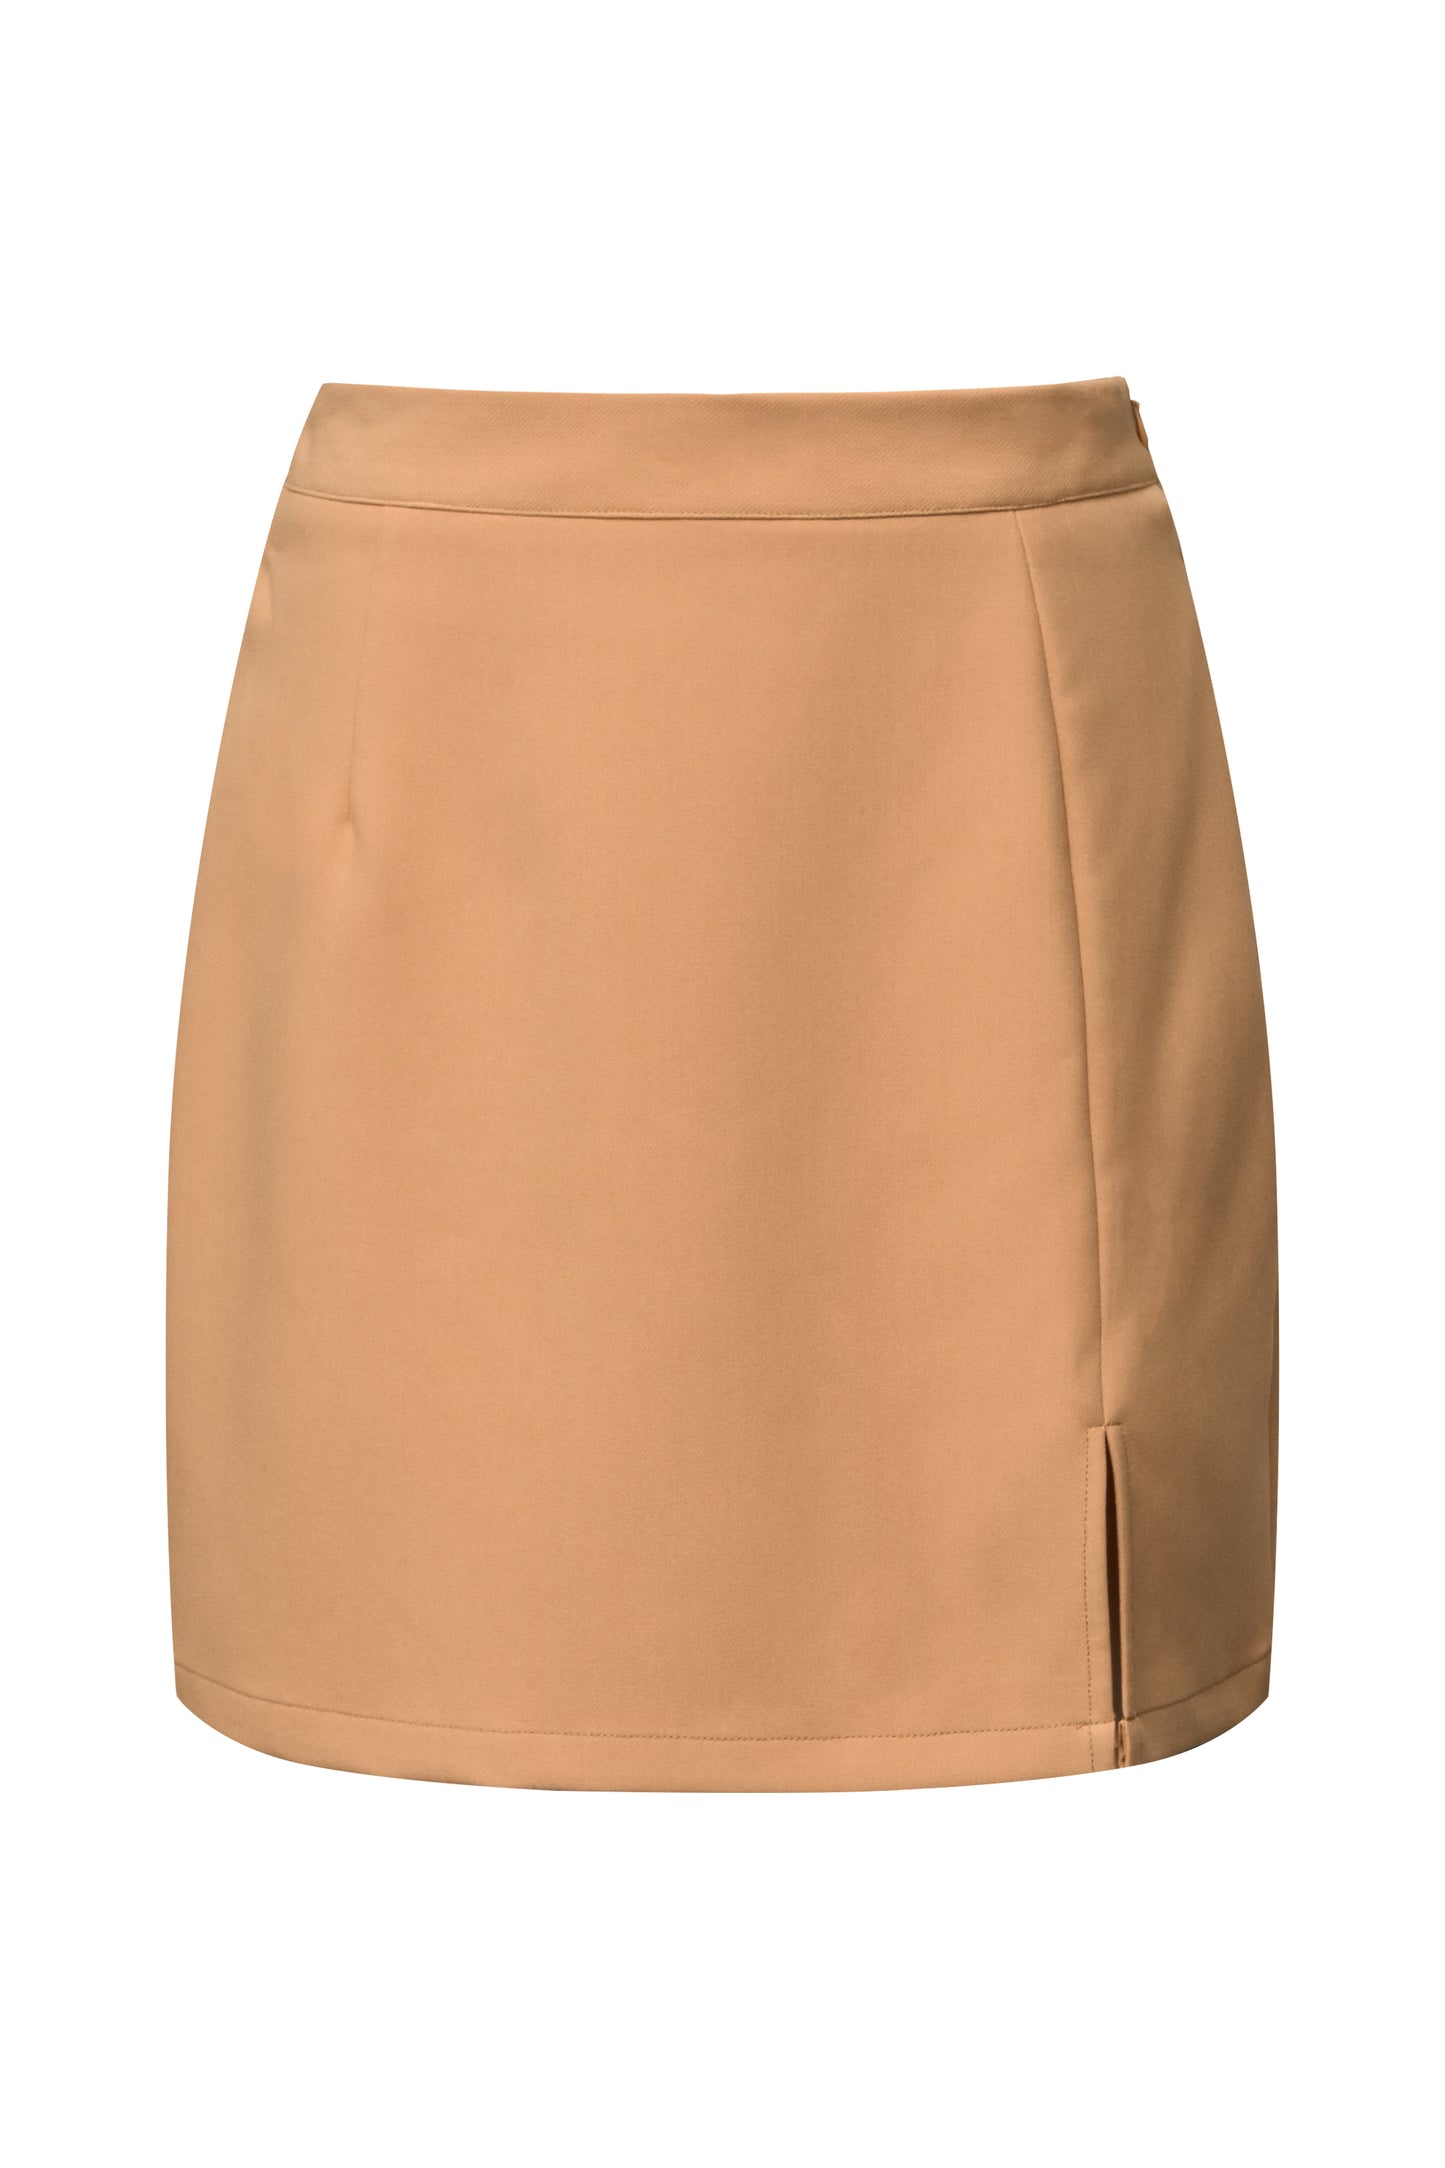 A-VIEW - Annali skirt - Orange